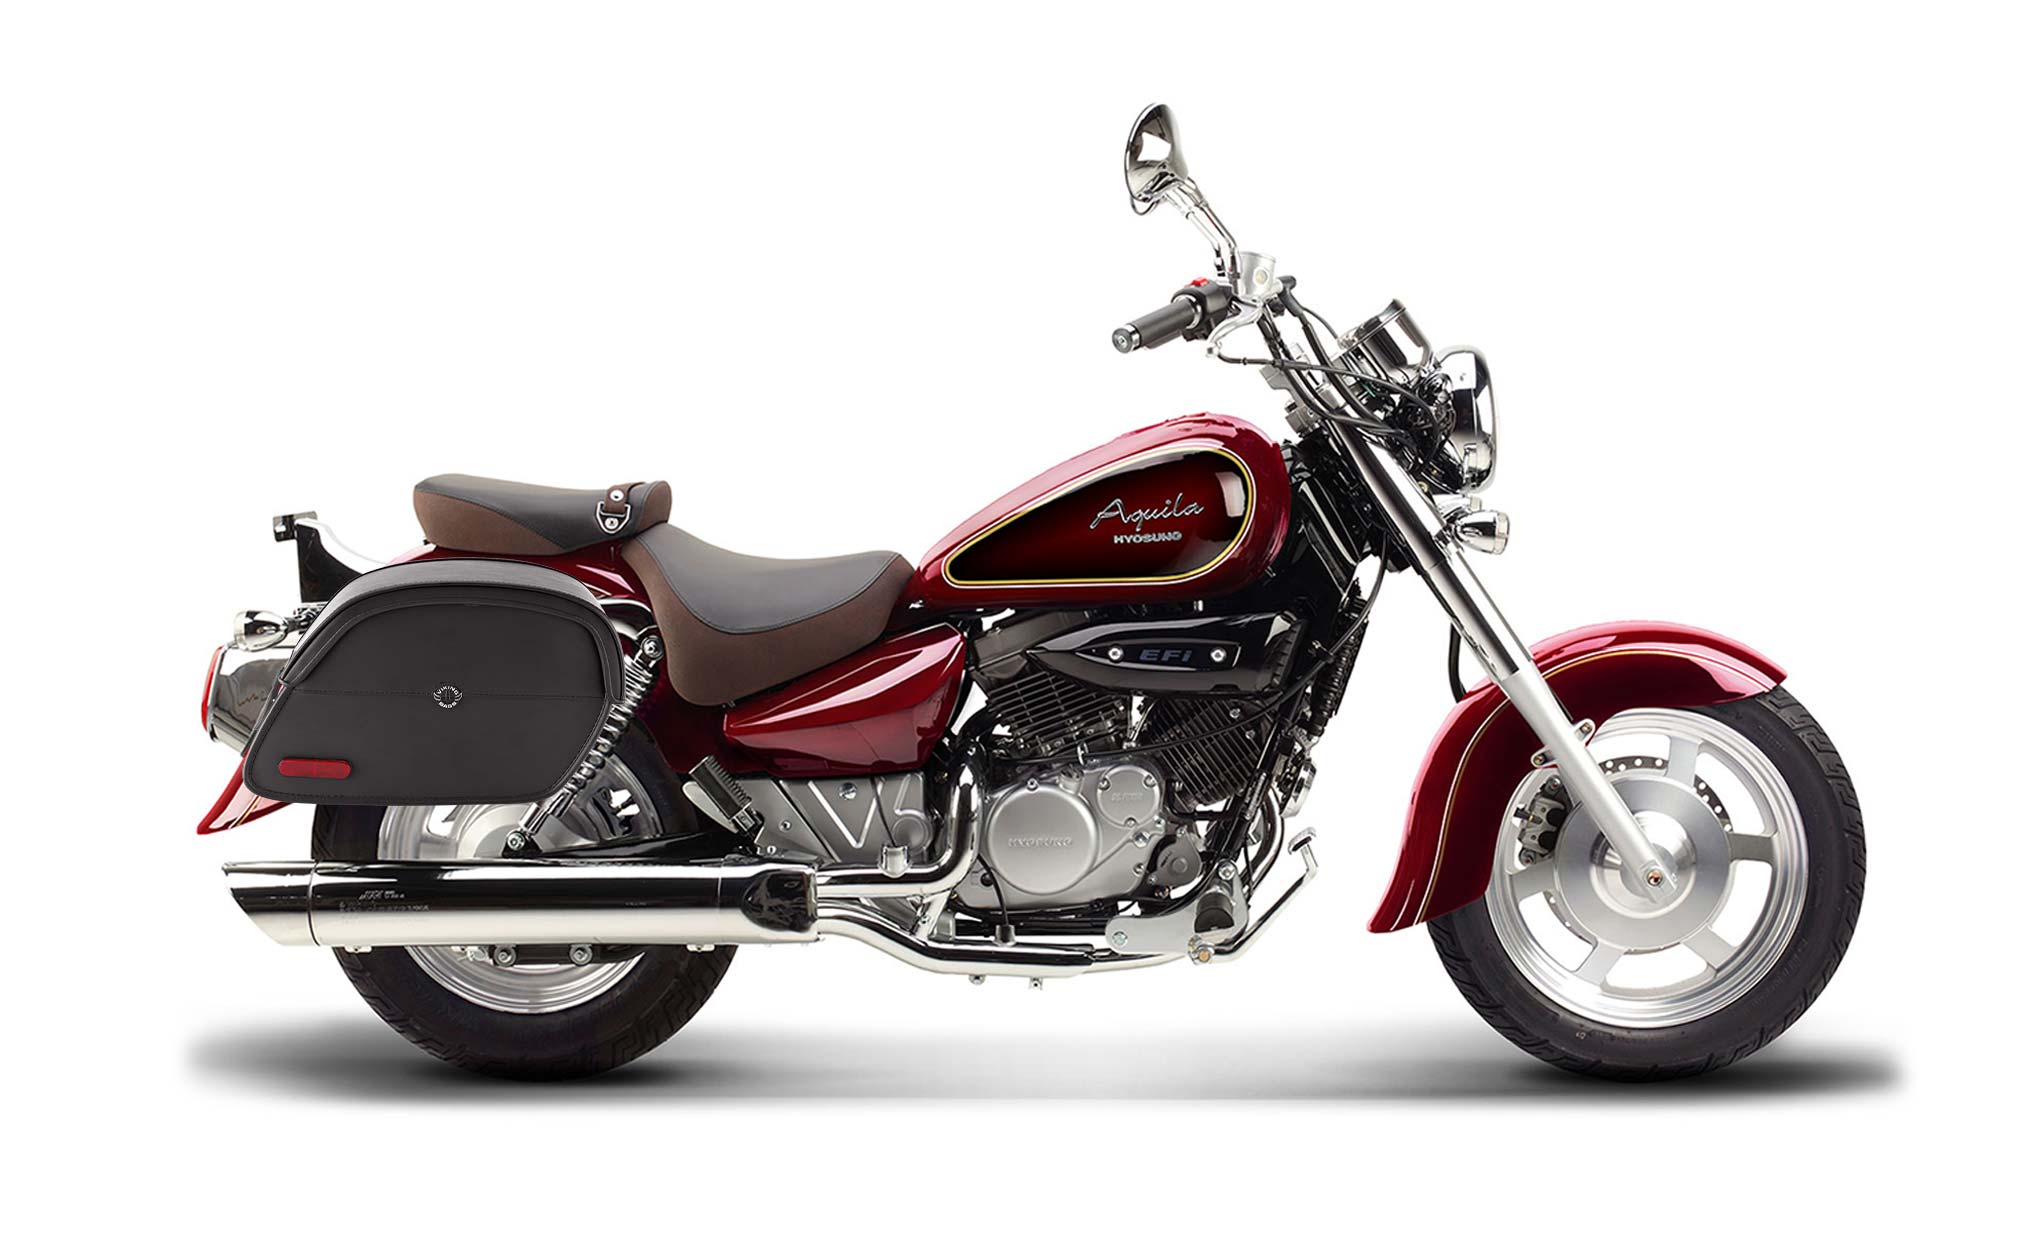 Viking California Large Hyosung Aquila Gv 250 Leather Motorcycle Saddlebags on Bike Photo @expand